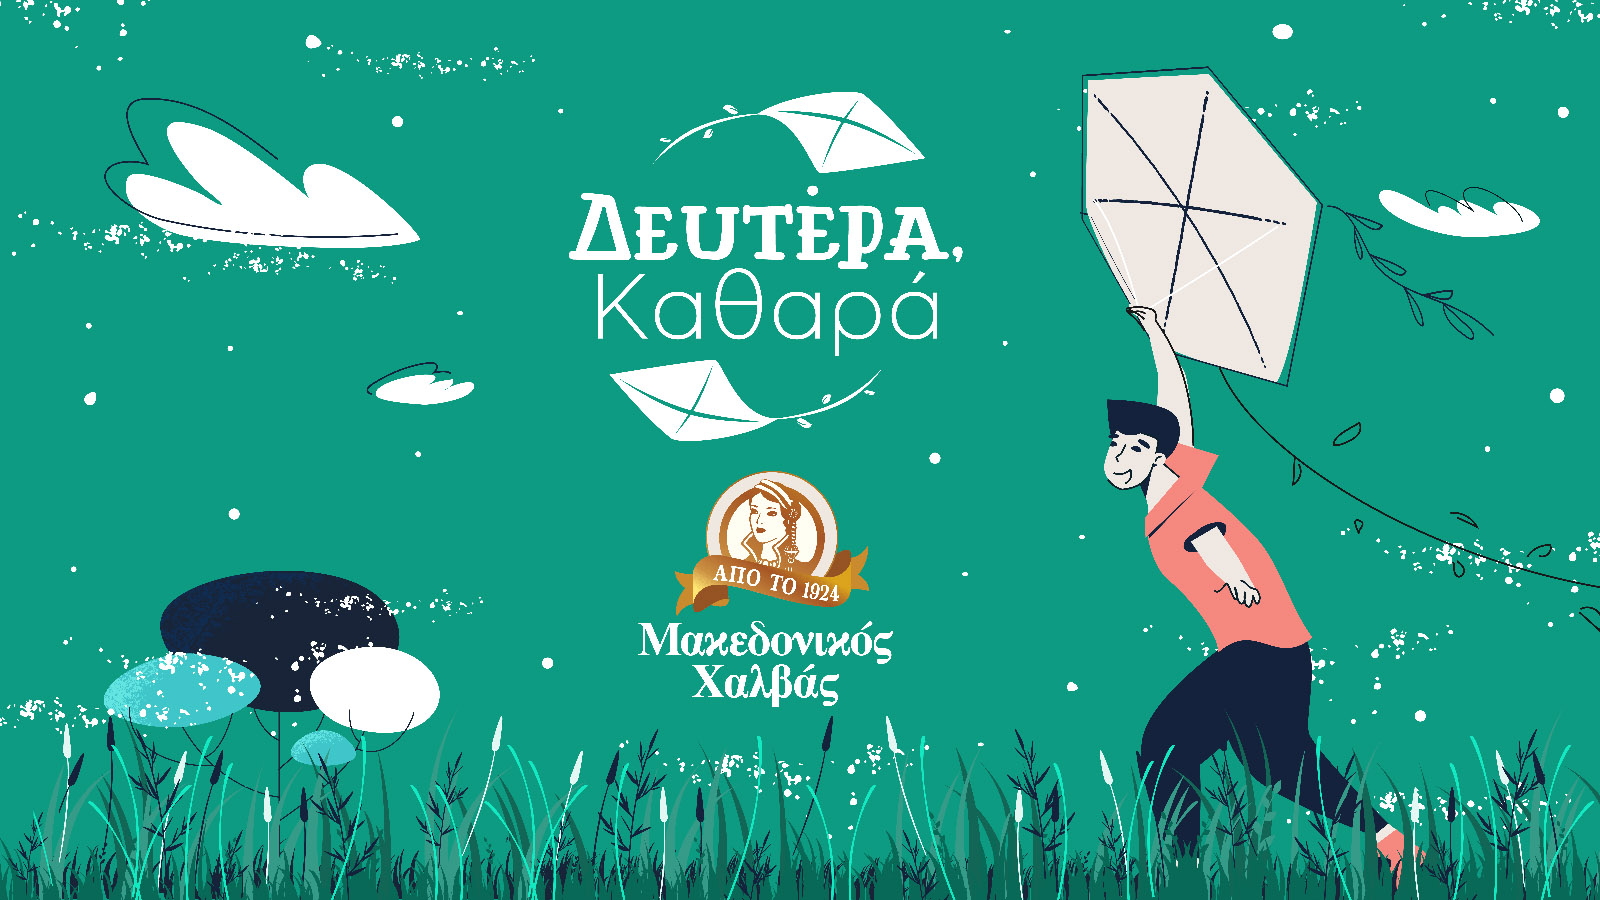 «Δευτέρα Καθαρά»: Μία σημαντική περιβαλλοντική πρωτοβουλία από τον Μακεδονικό Χαλβά